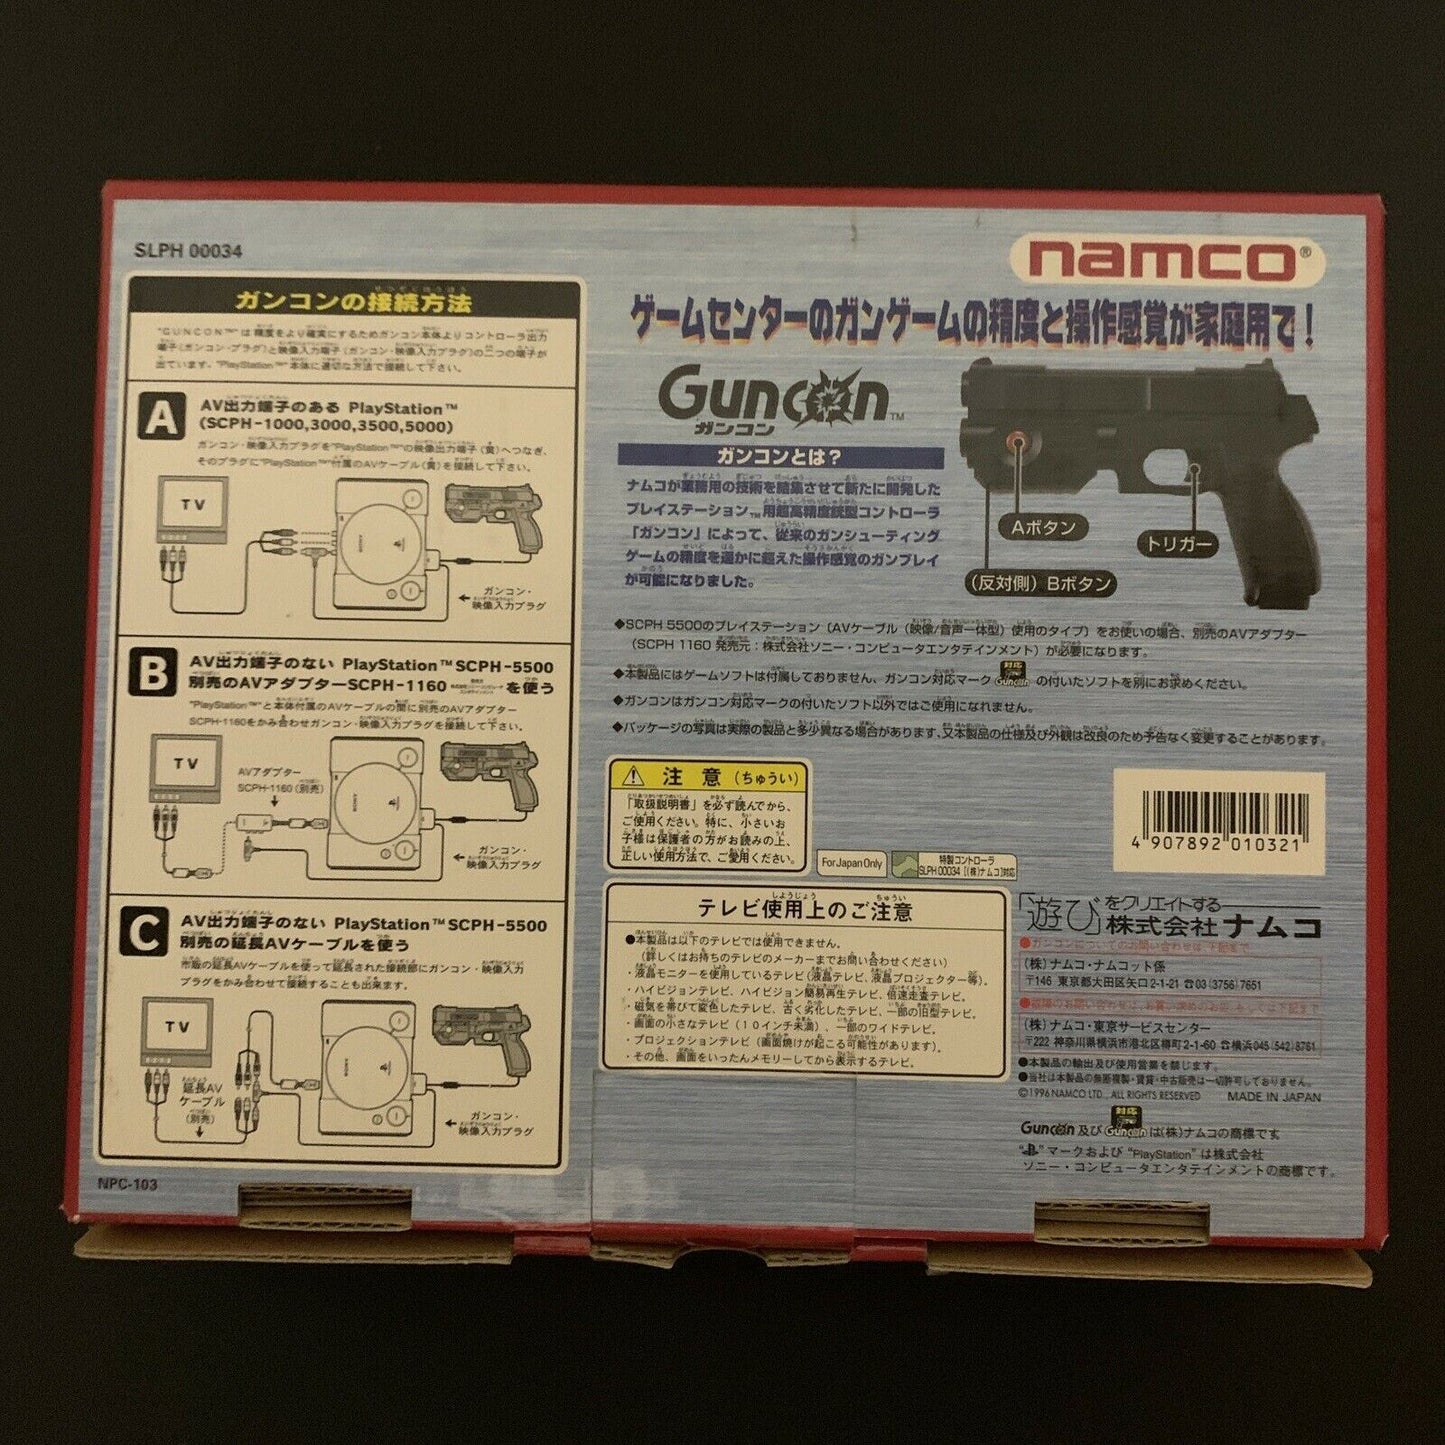 Official Namco Guncon 1 PlayStation Original Boxed PS1 Gun Controller NPC-103